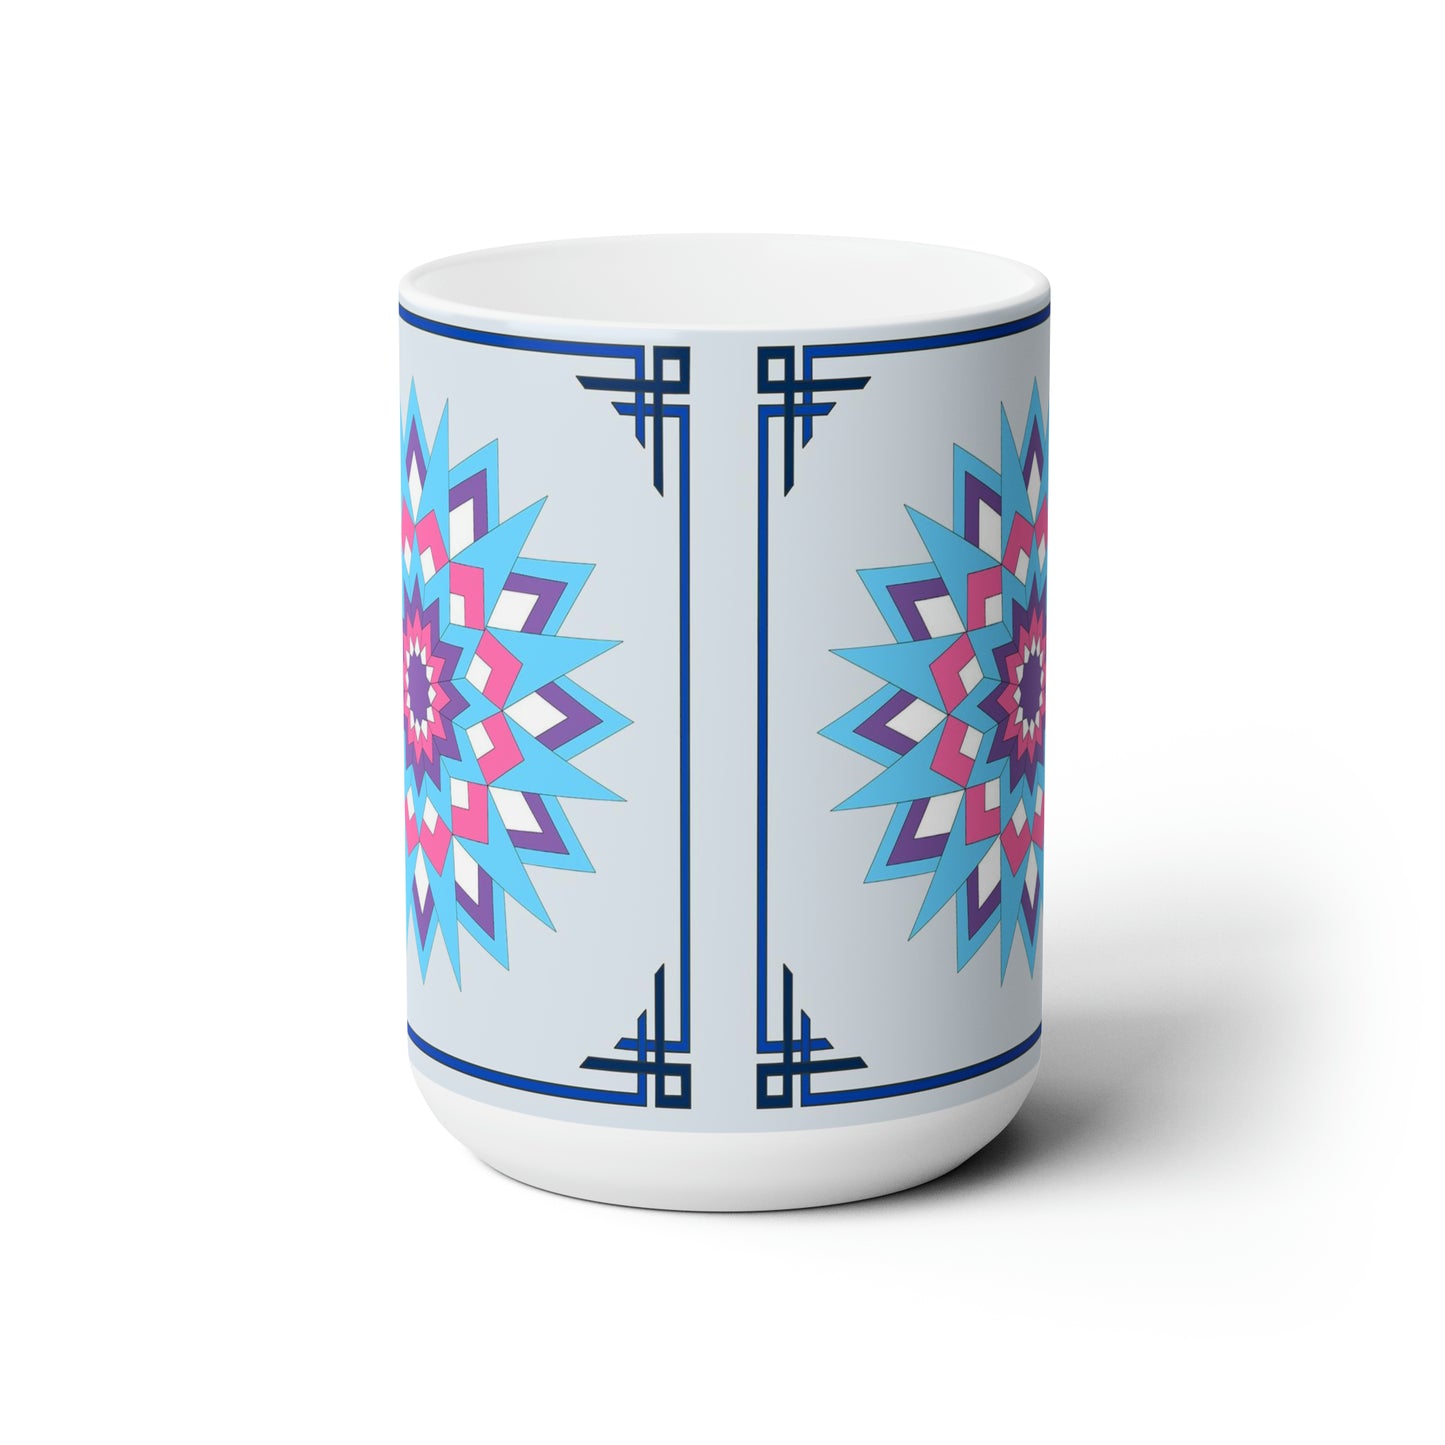 Star Burst Quilt Design 15 oz. Mug